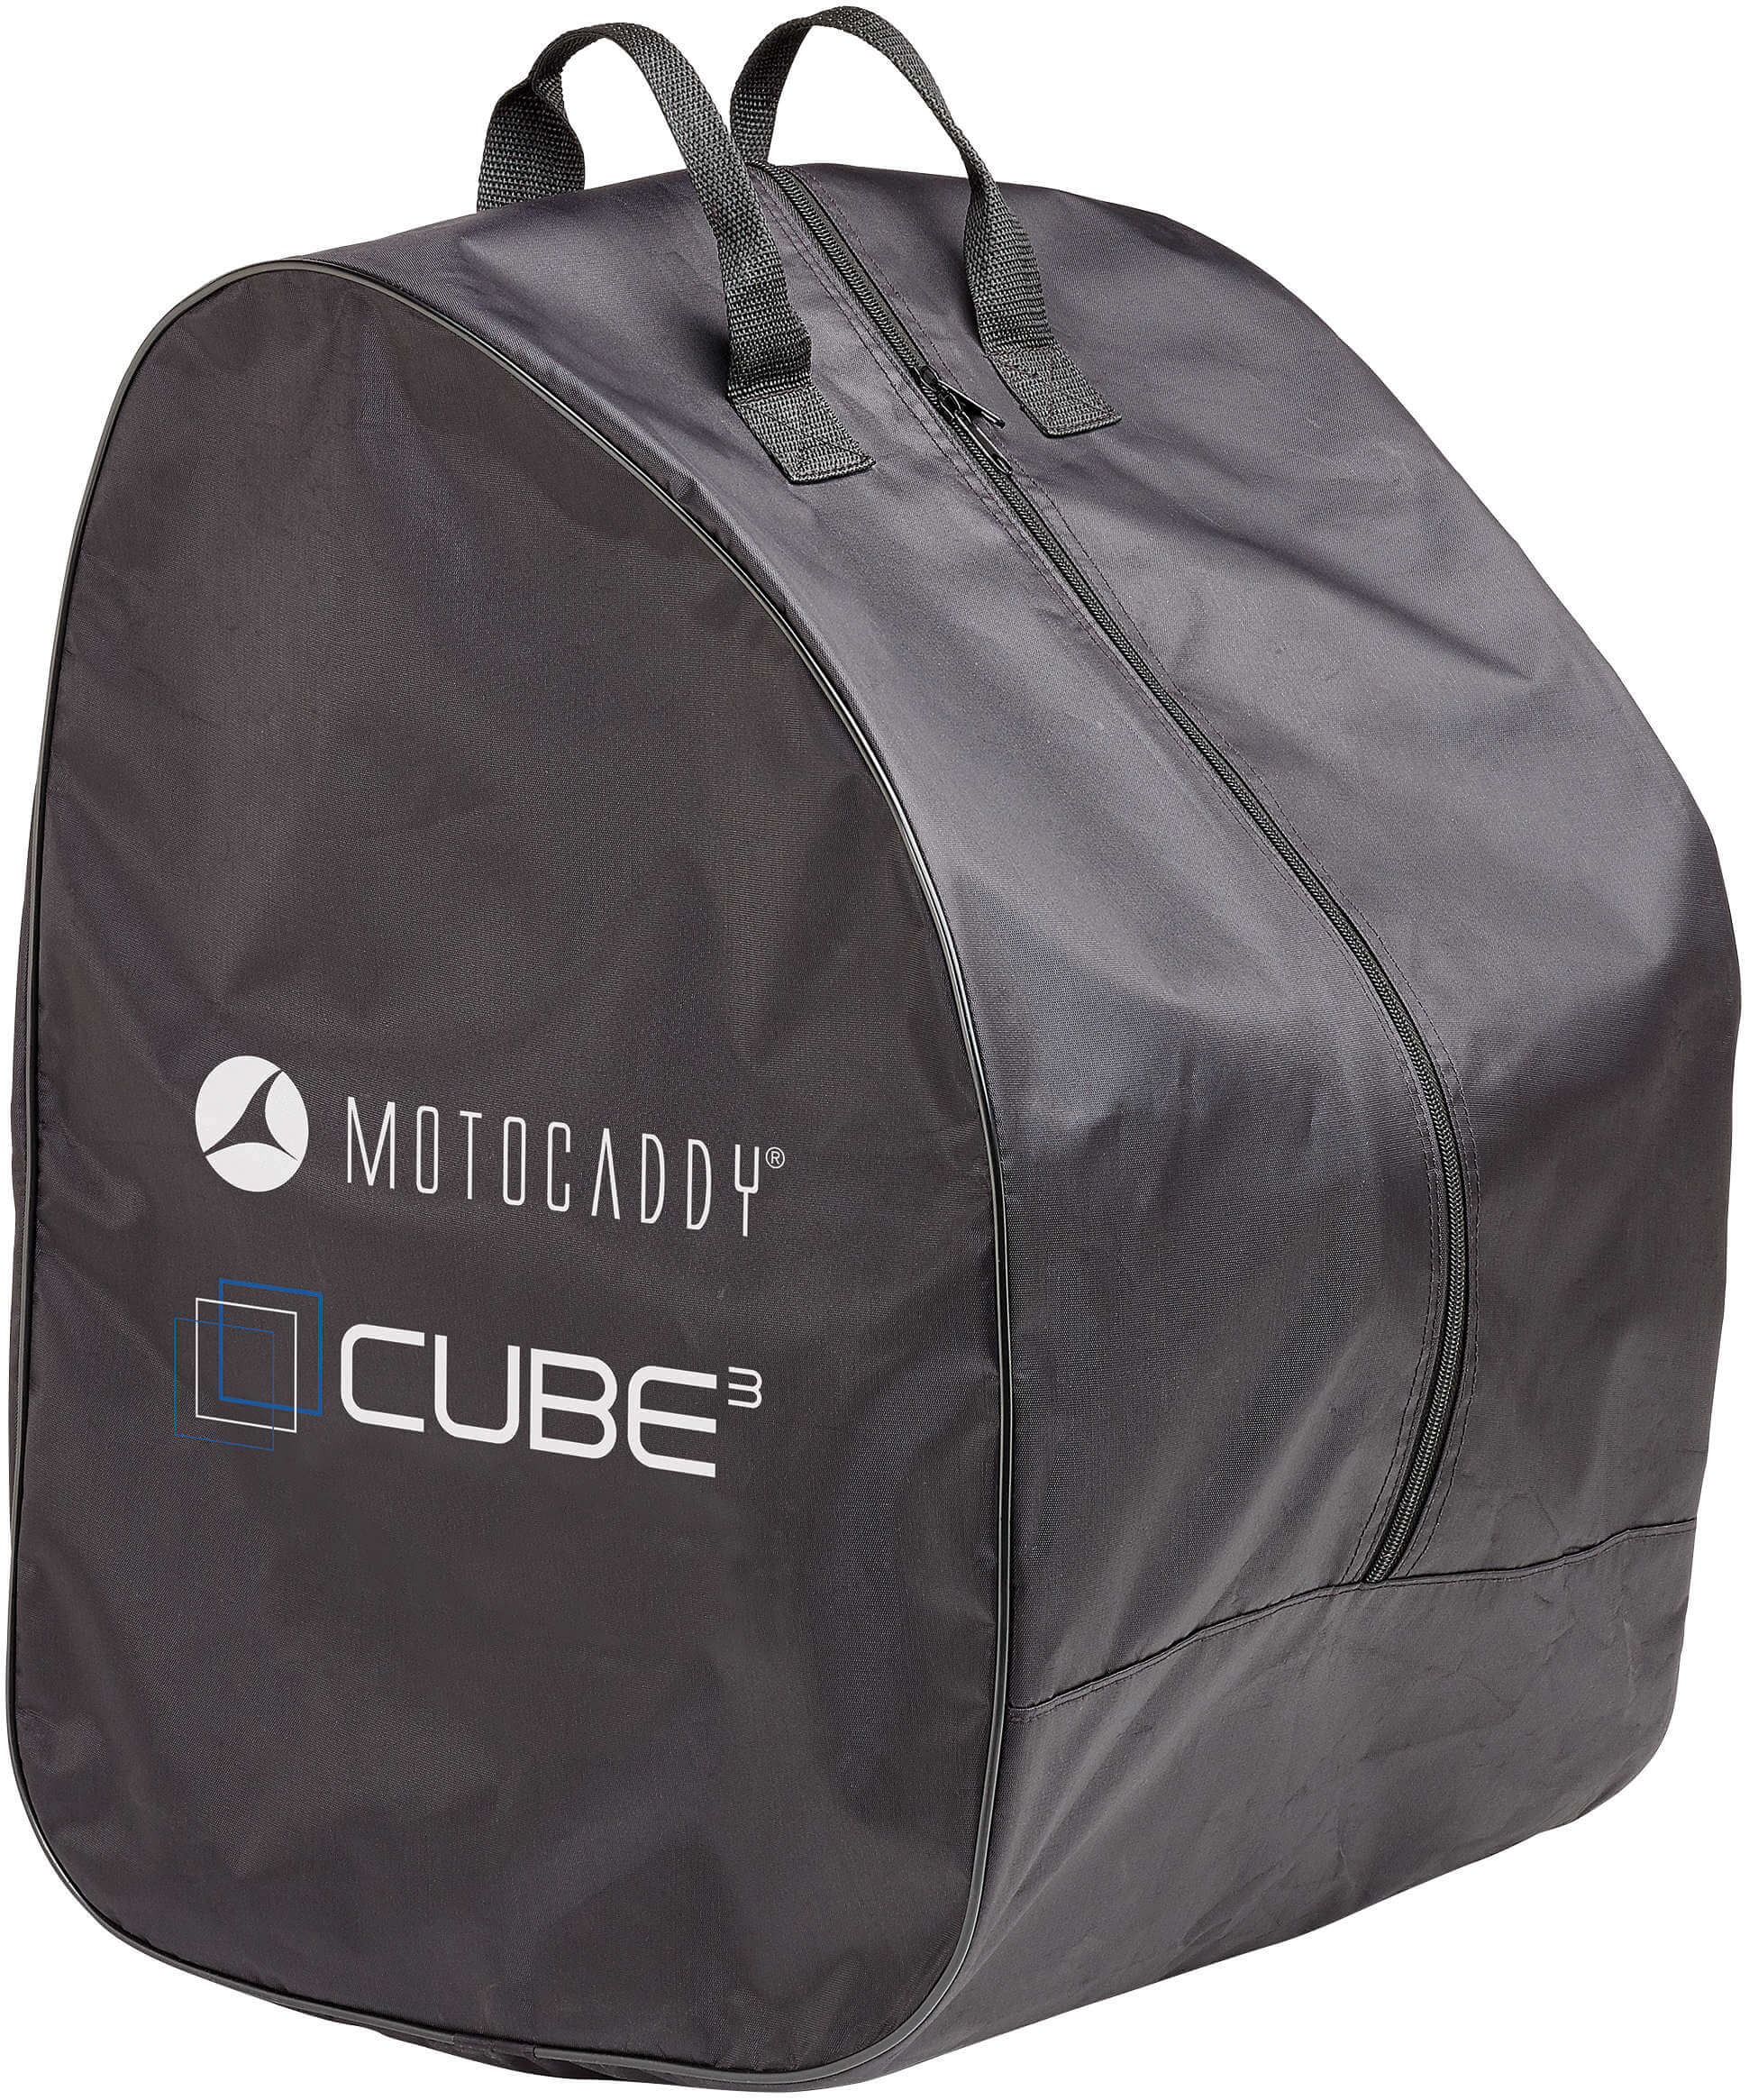 Motocaddy Transporttasche für Cube Serie